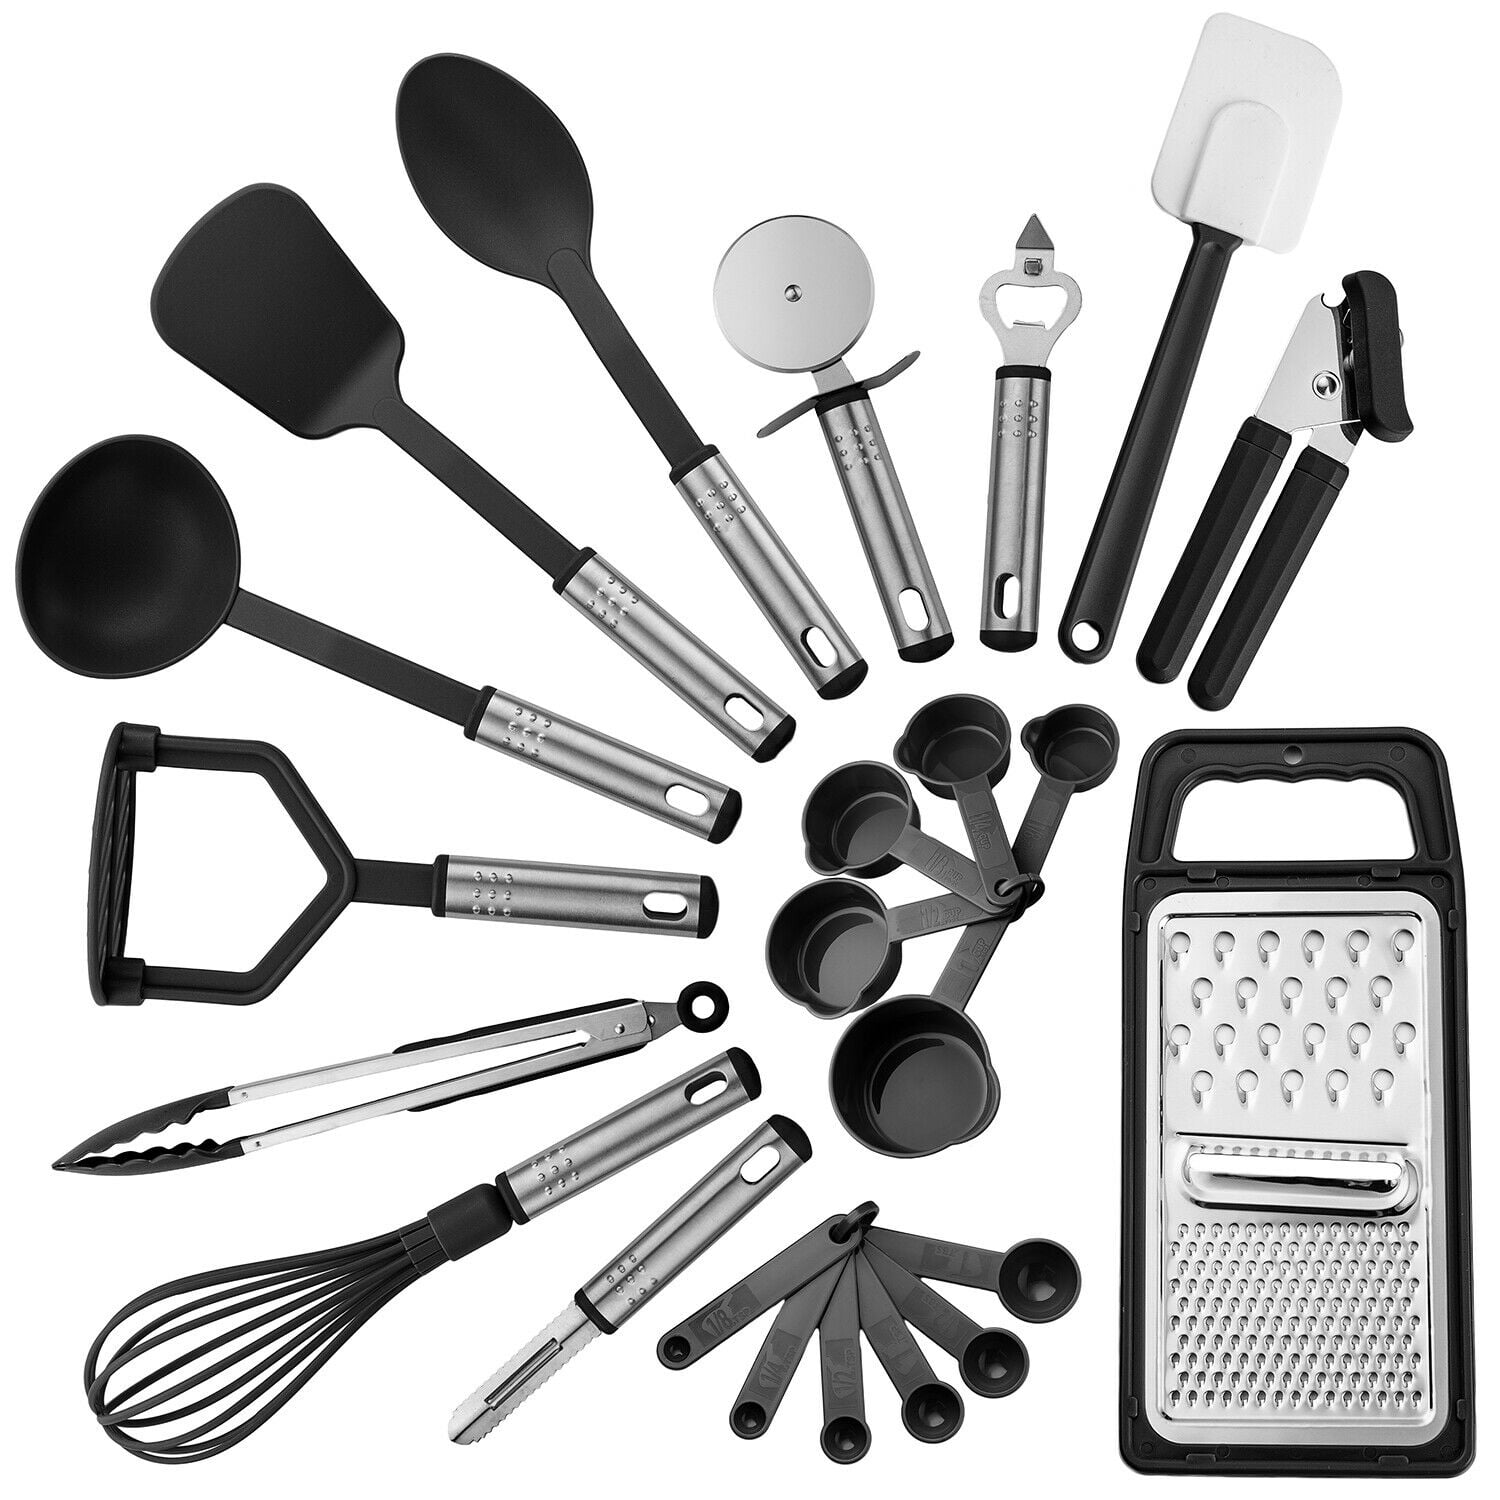 Black & Decker White Kitchen Utensils & Gadgets